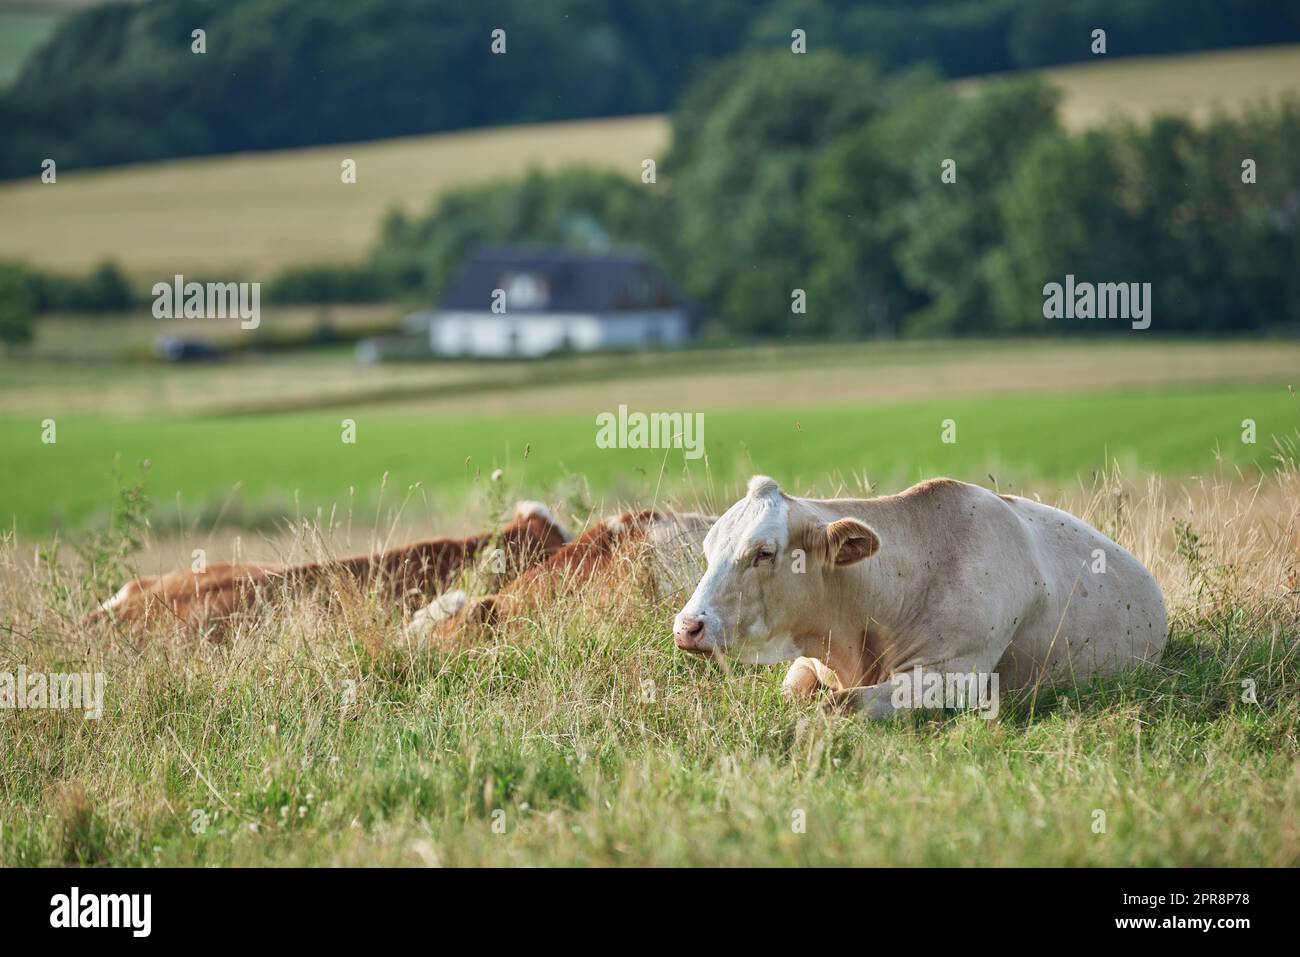 Braune und weiße Kühe auf einem Feld und Ackerland im Hintergrund mit Kopierfläche. Rinder oder Nutztiere in einem nachhaltigen landwirtschaftlichen Betrieb für die Milch-, Rindfleisch- oder Fleischindustrie mit Kopierraum Stockfoto